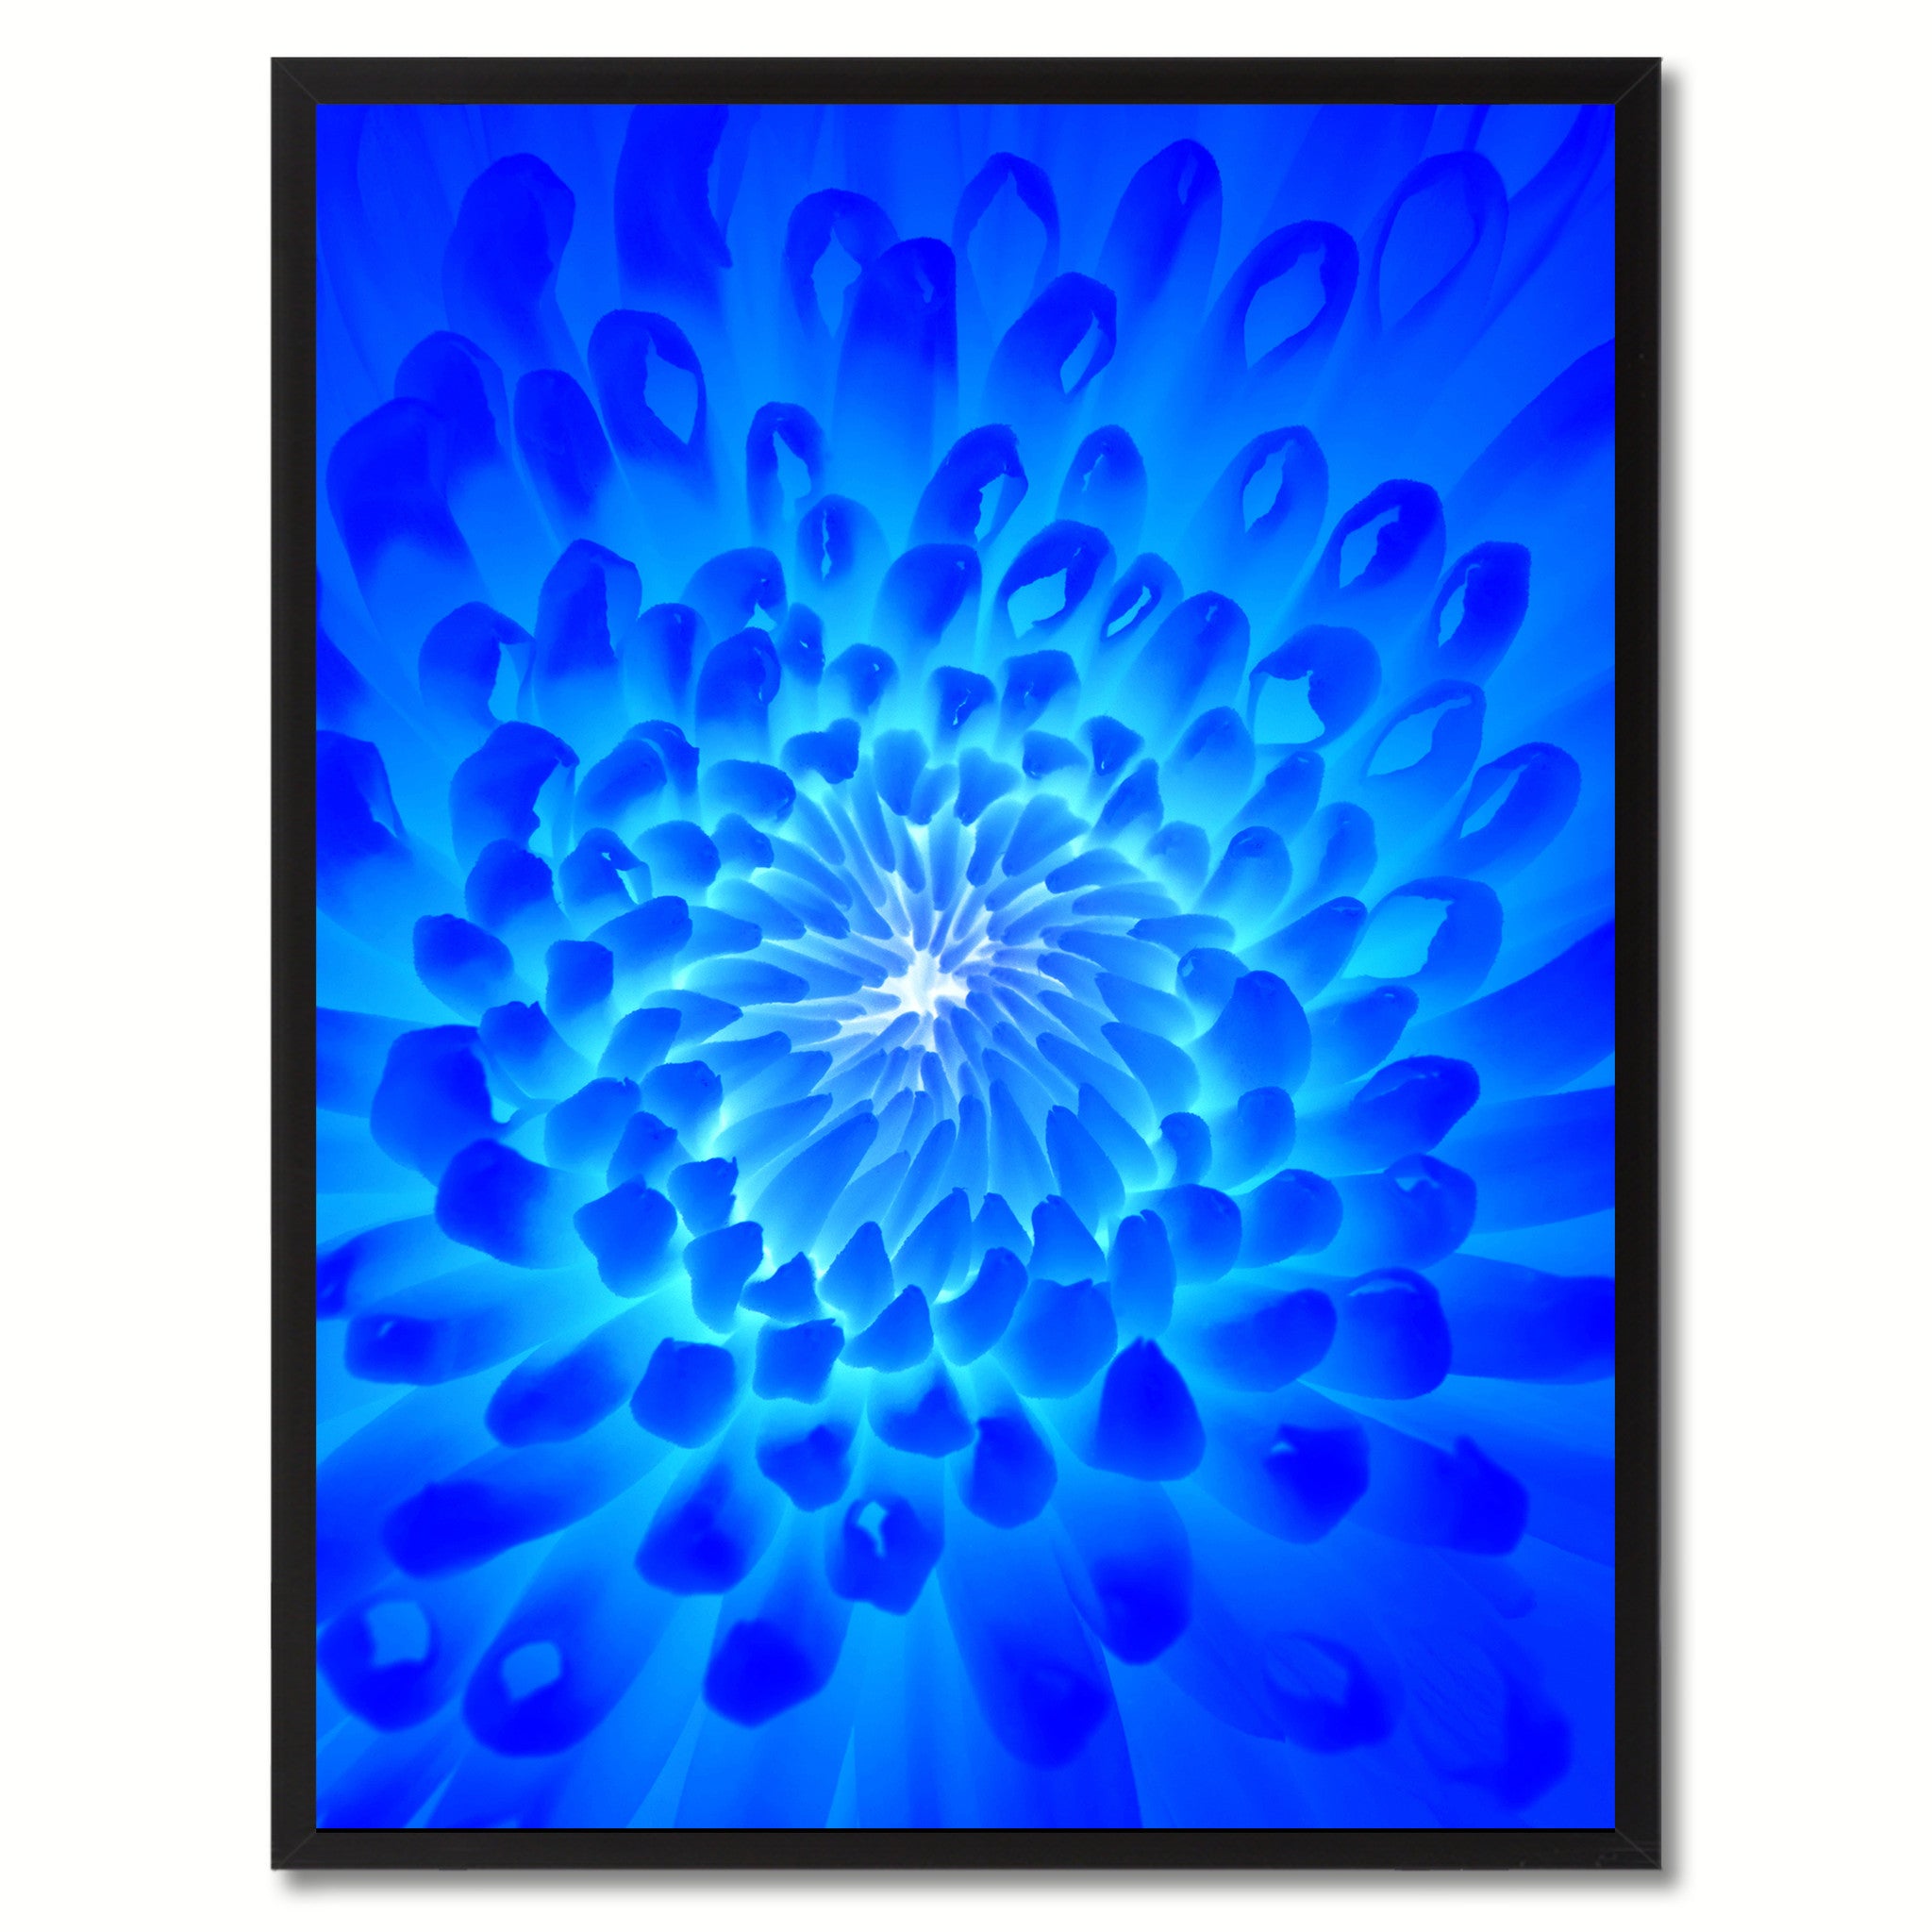 Blue Chrysanthemum Flower Framed Canvas Print Home Décor Wall Art